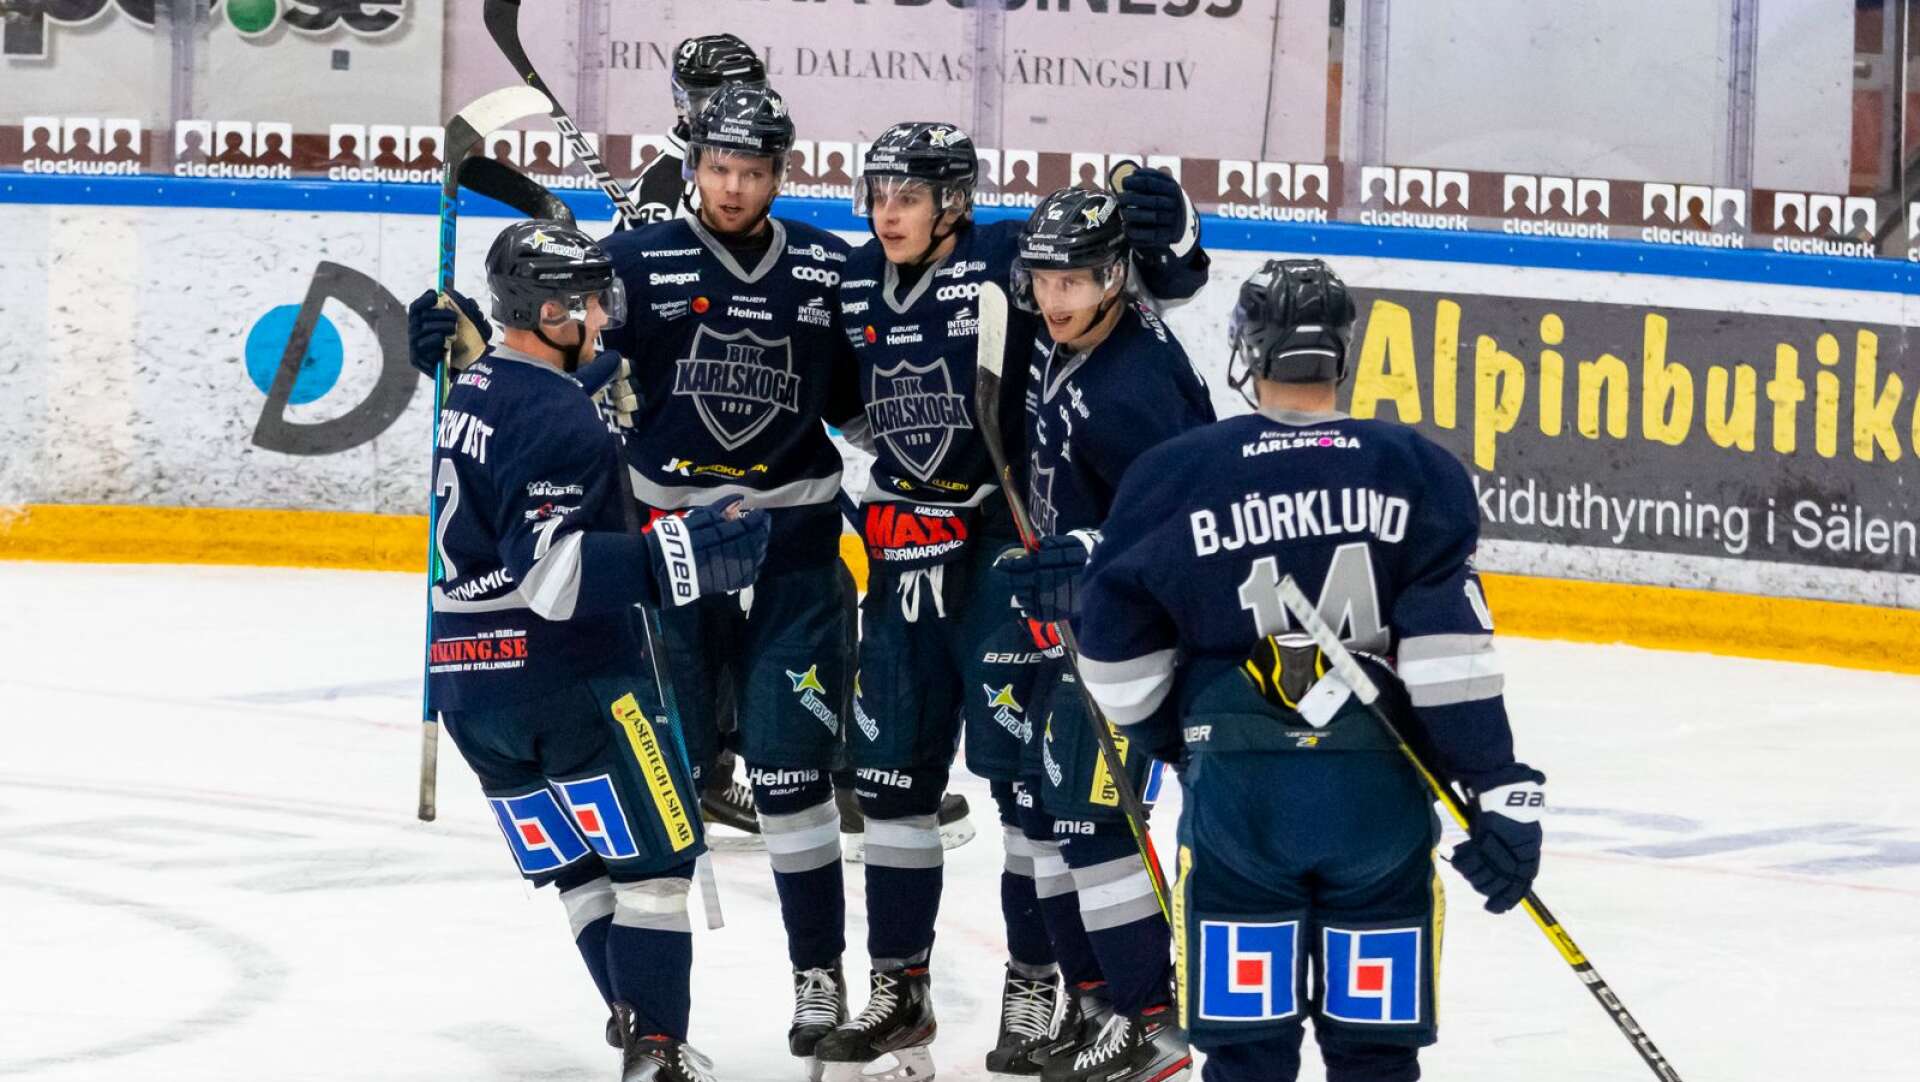 BIK-jubel! Från vänster är det Axel Bergkvist, Alexander Leandersson, Linus Karlsson, Gustaf Thorell och Henrik Björklund som jublar.